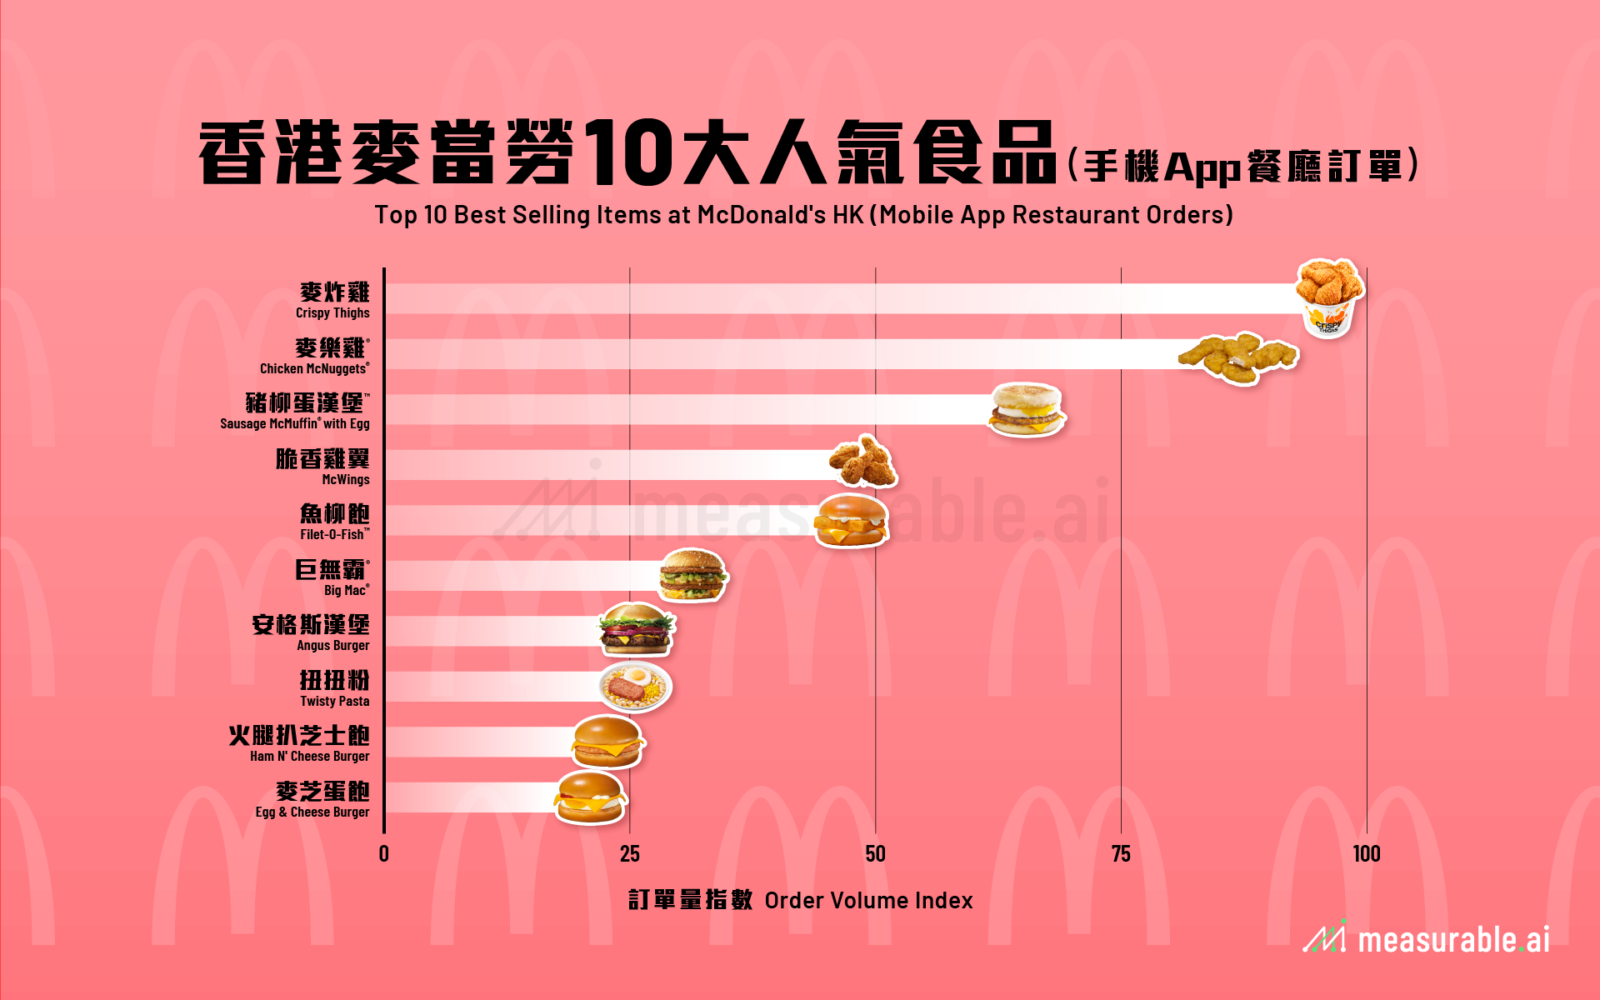 香港麥當勞 10 大人氣食品 